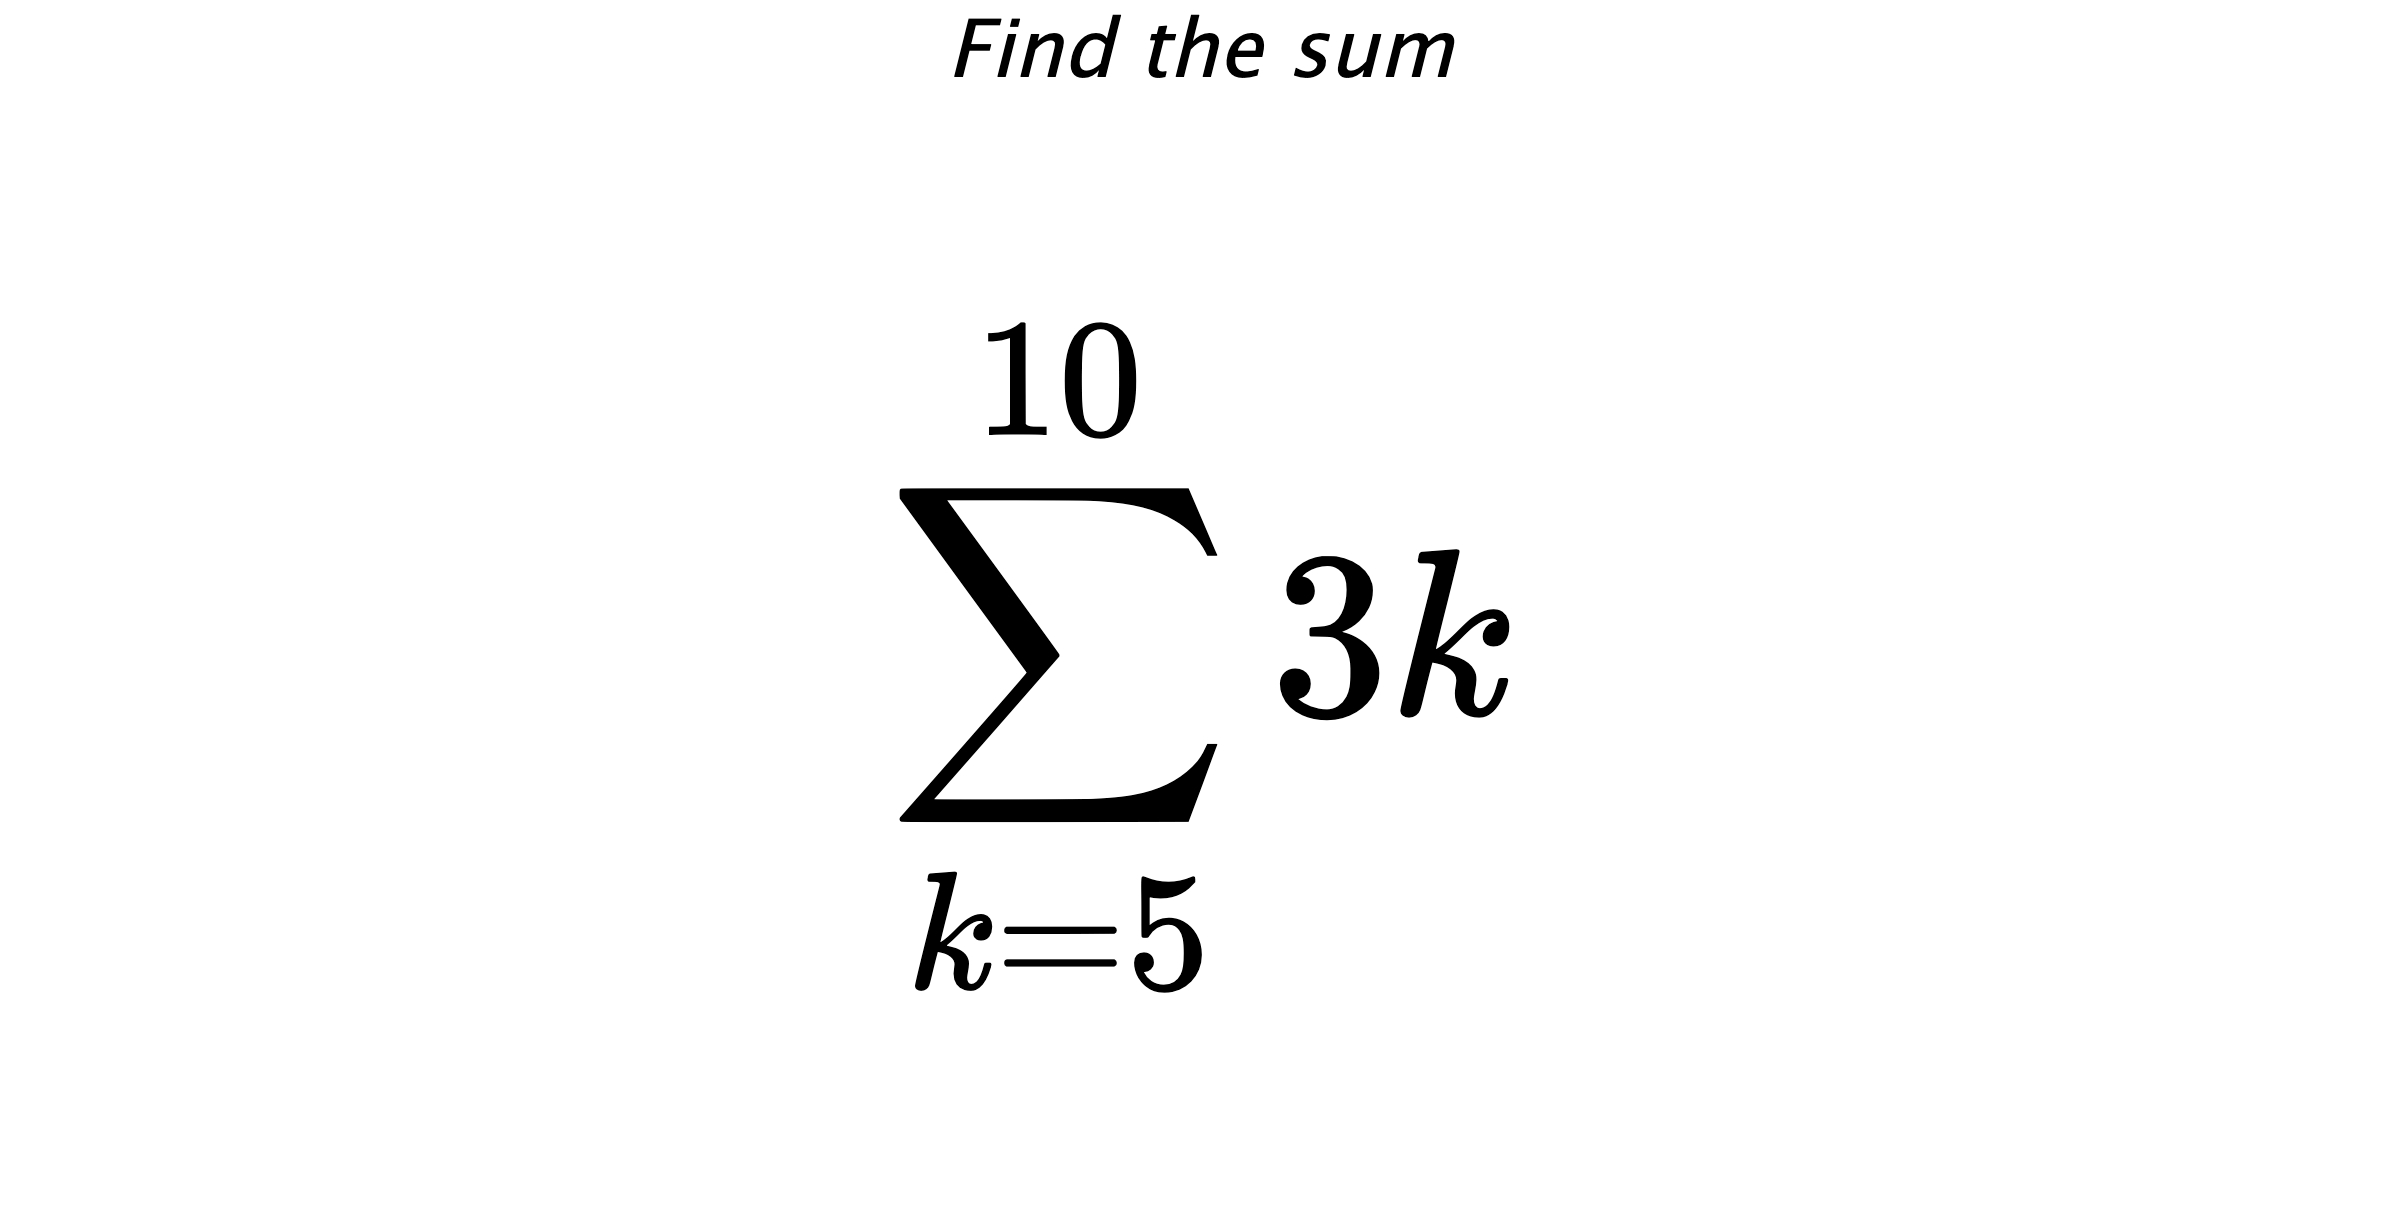 Find the sum $$ \sum_{k=5}^{10} 3k$$